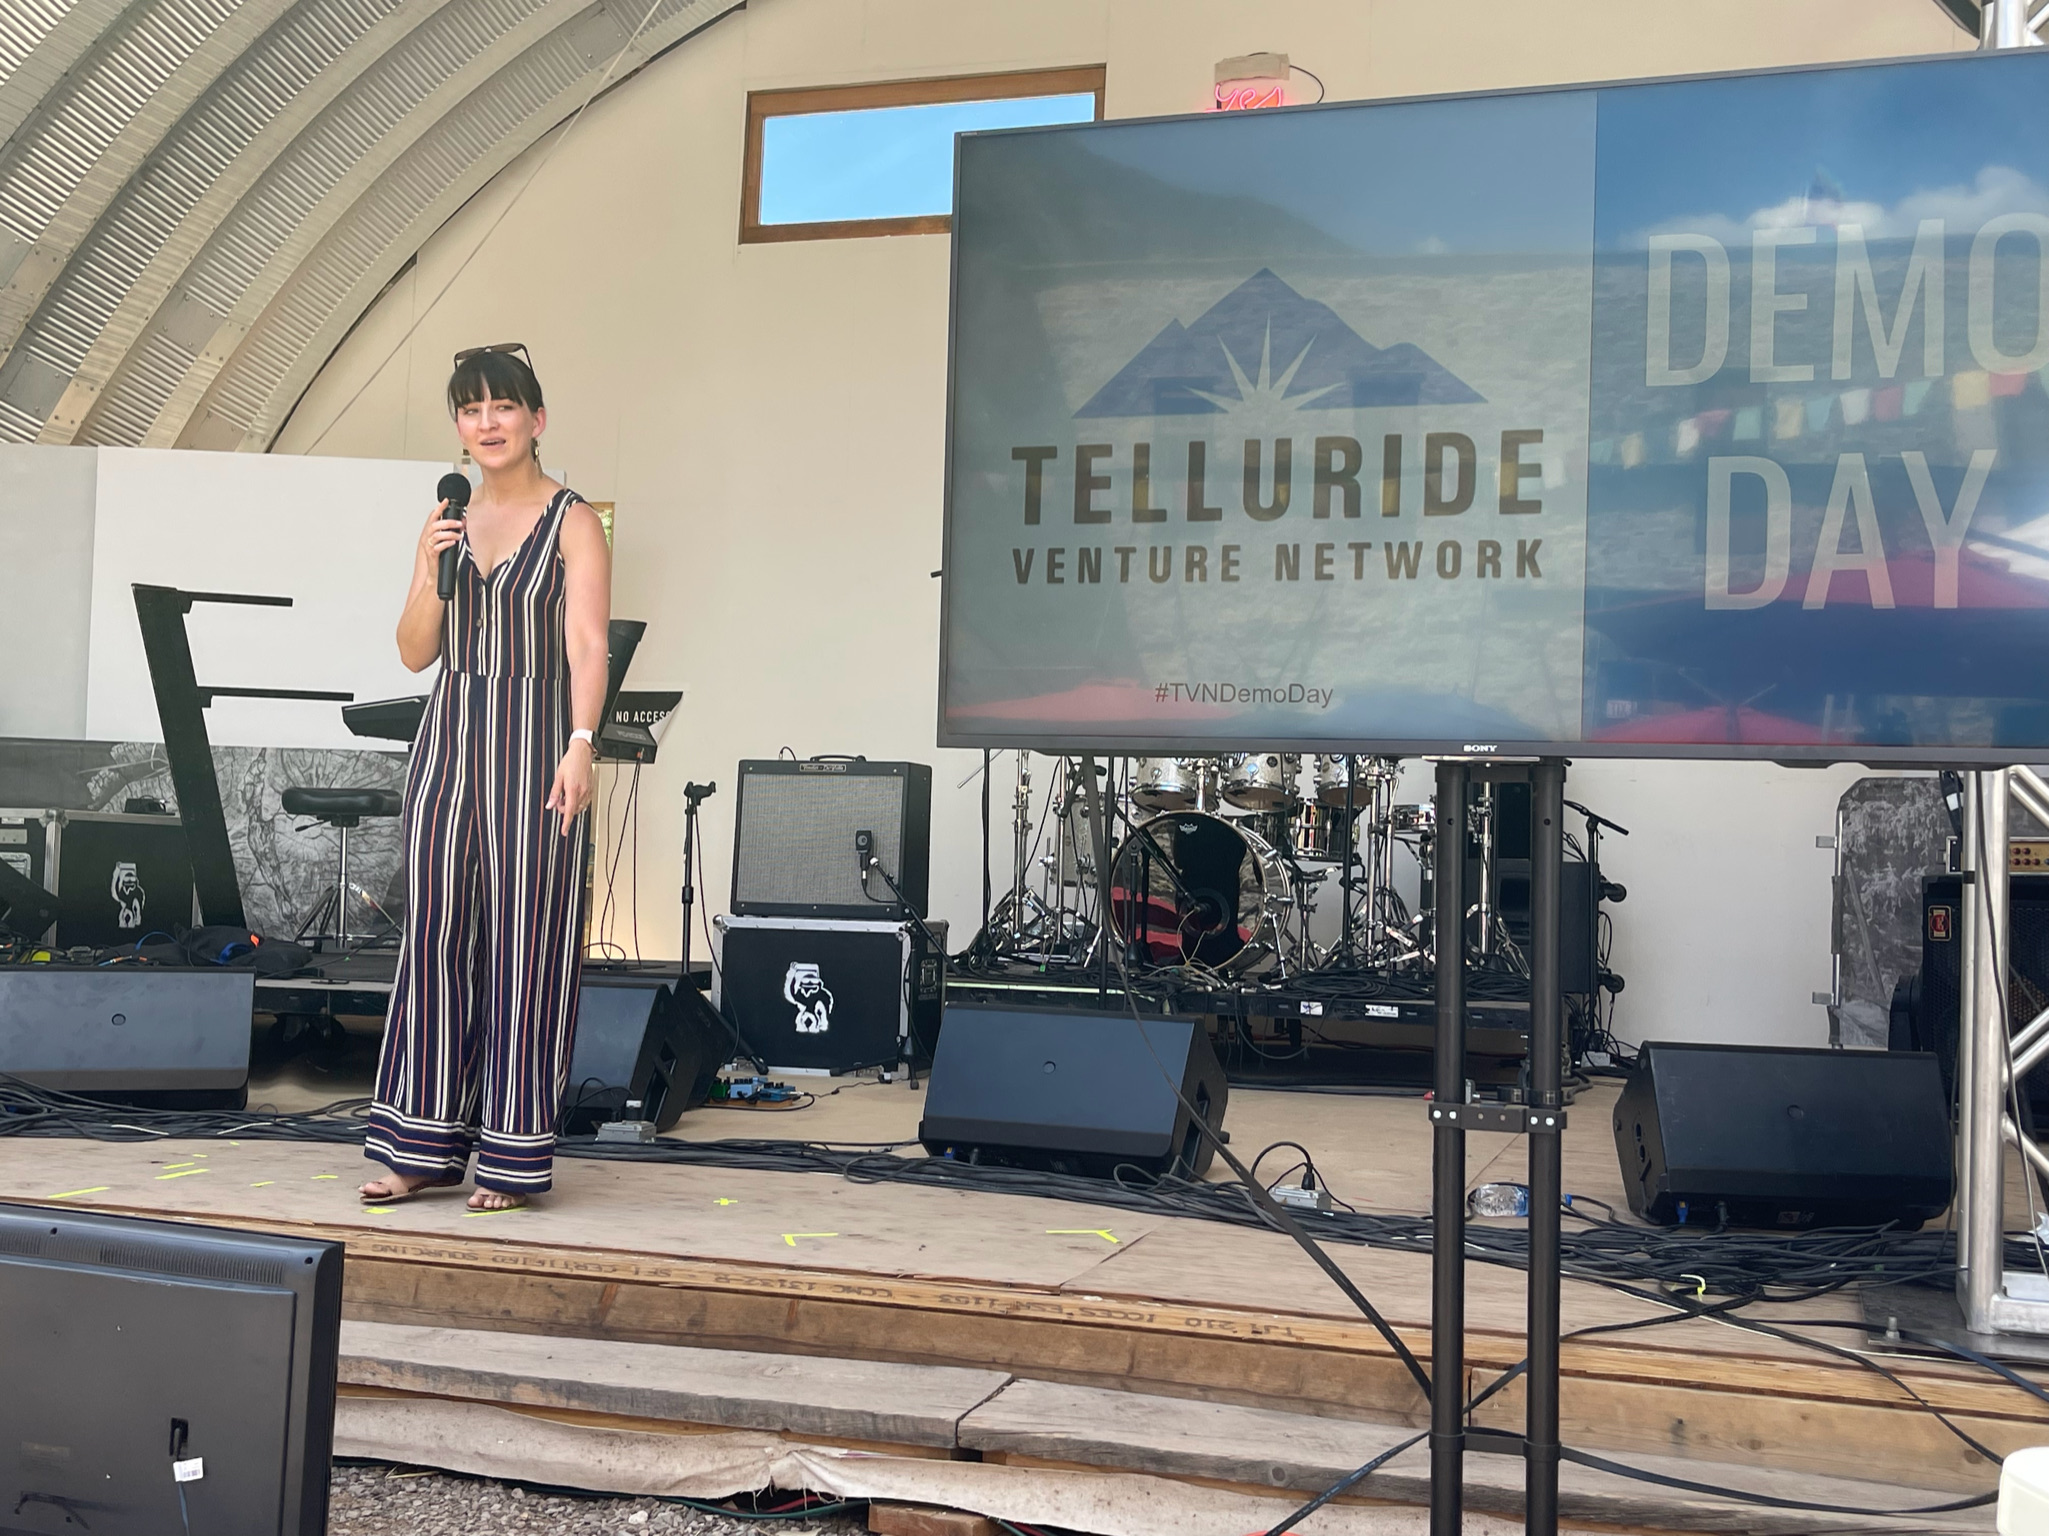 Telluride Venture Network’s 9th Annual DEMO DAY